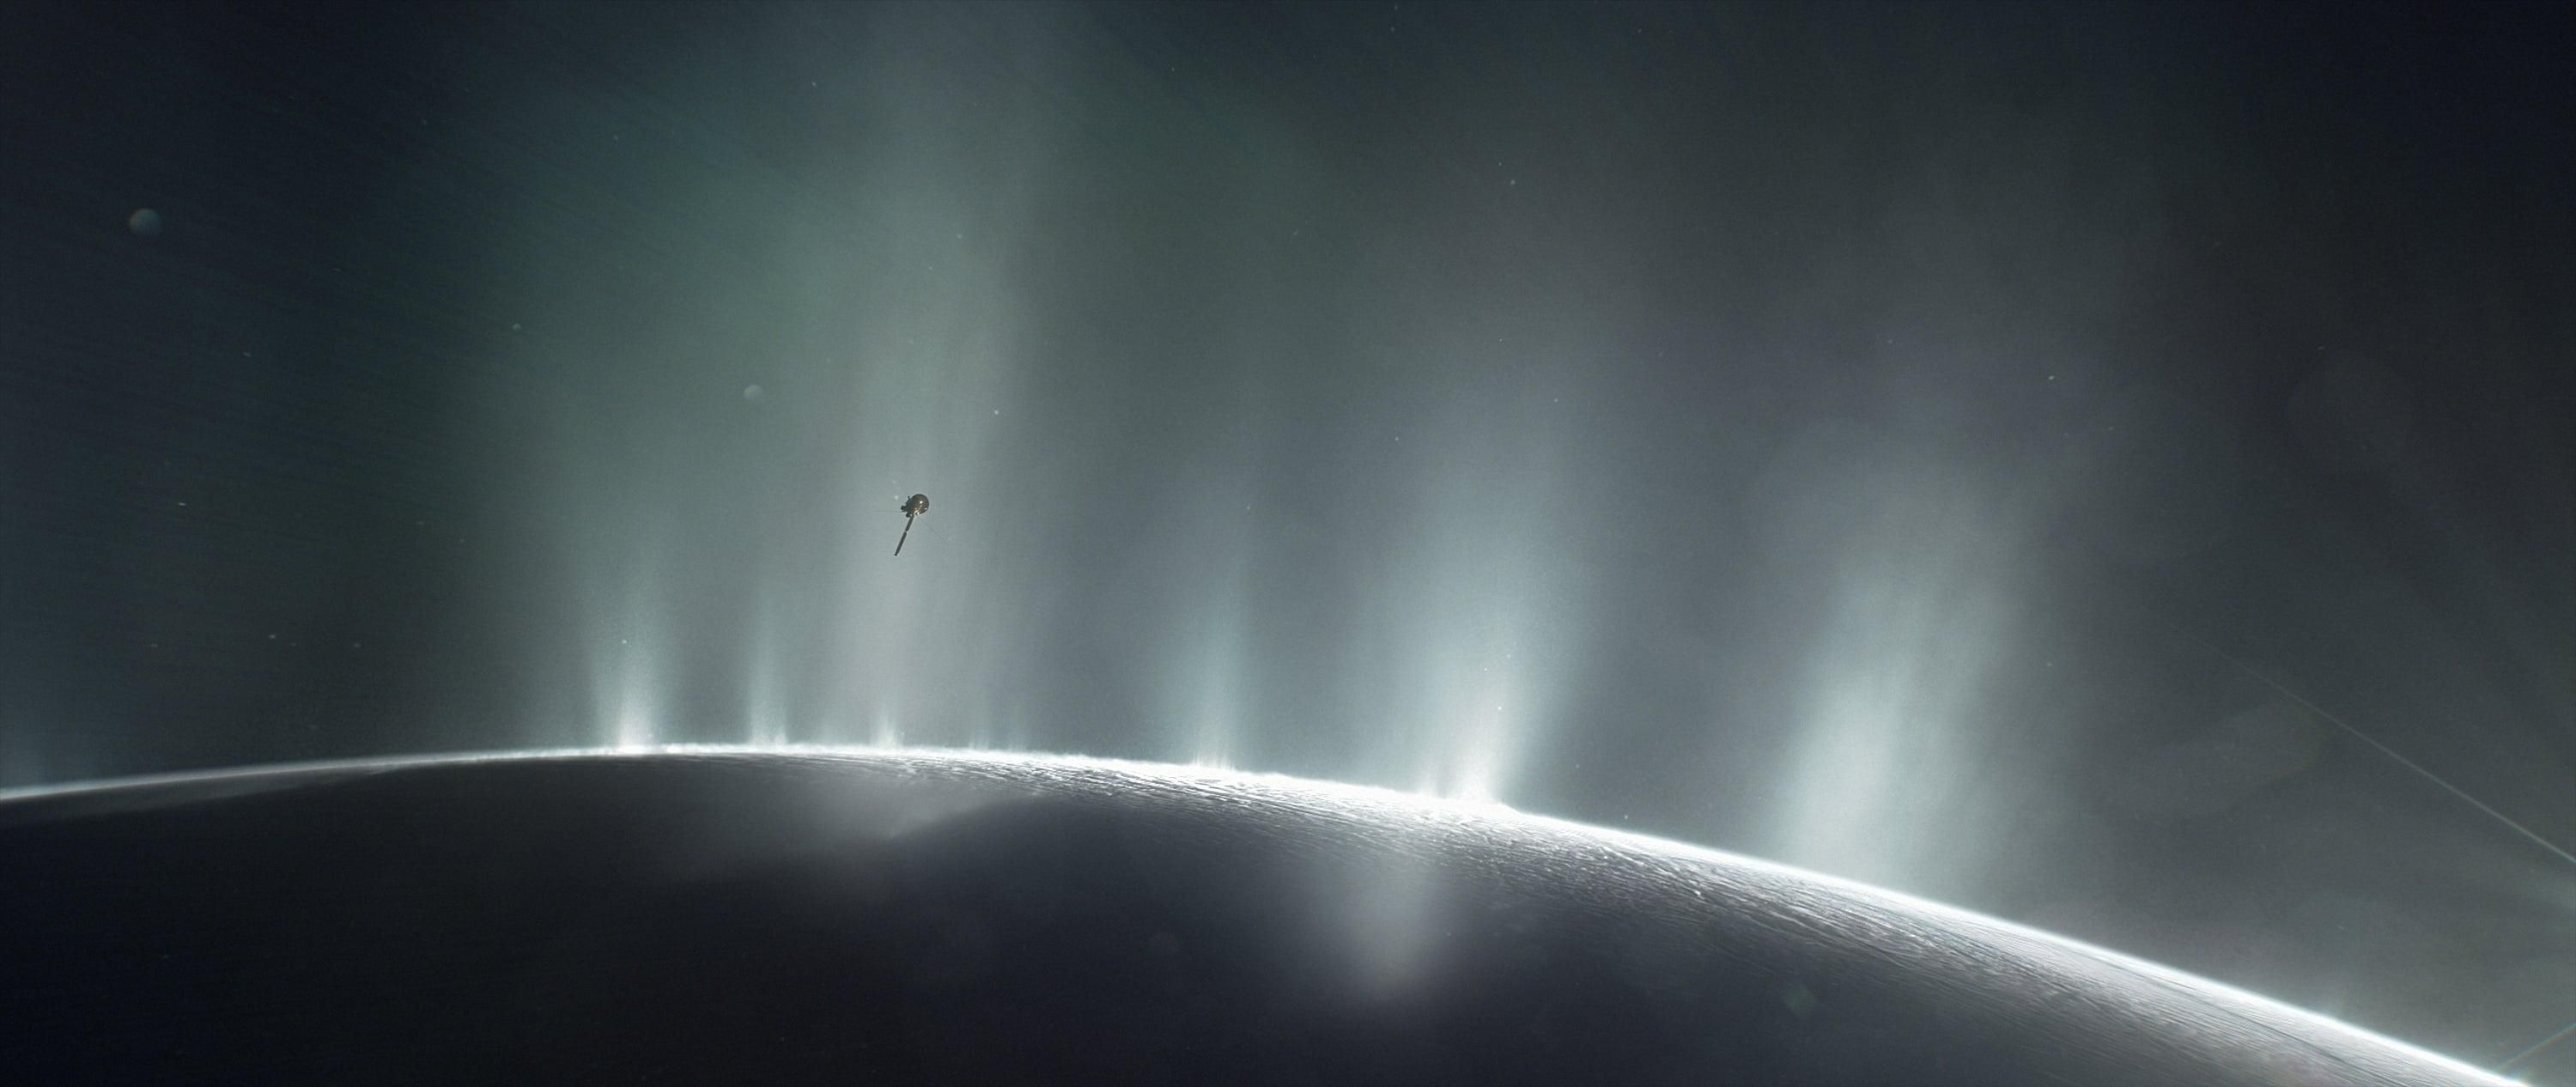 Энцелад: на спутнике Сатурна может существовать жизнь